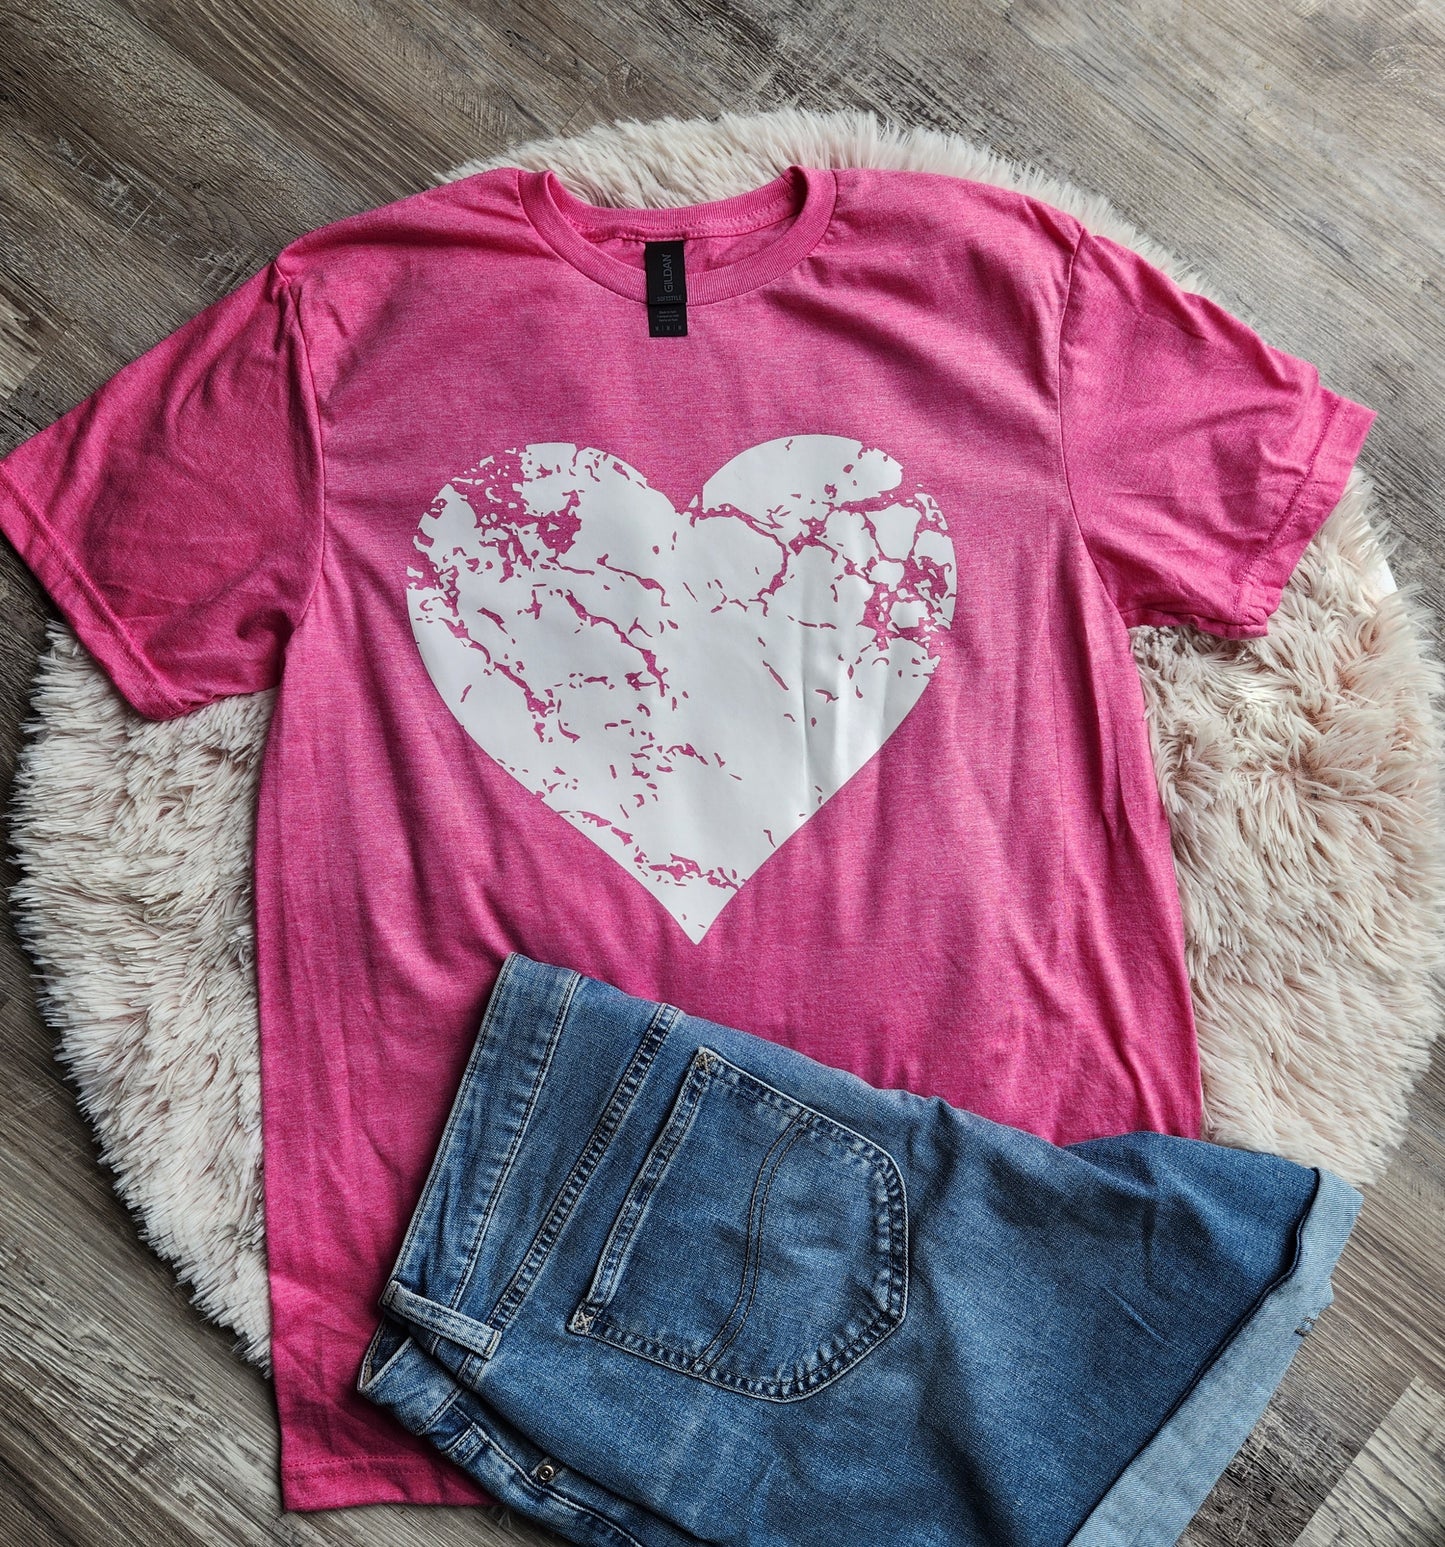 Distressed Heart Women's T-Shirt